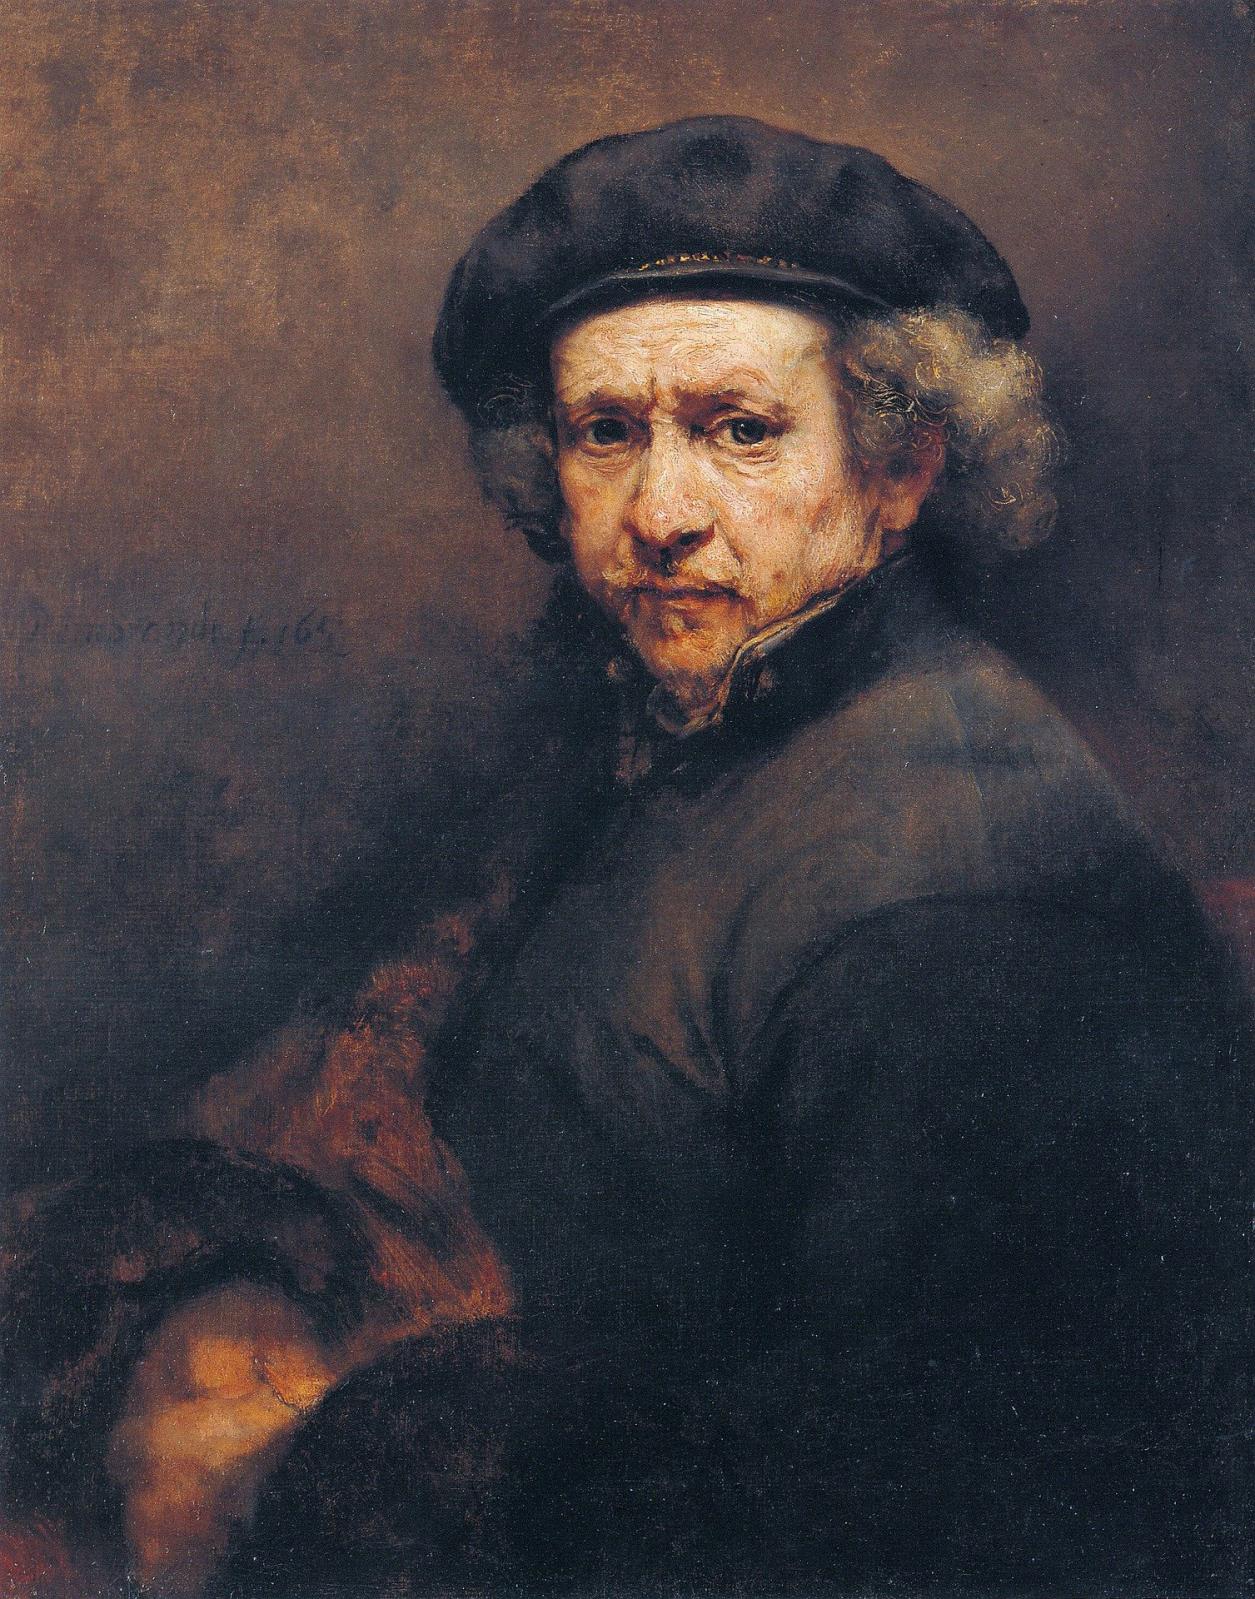 Rethinking Art History with Rembrandt Specialist Ernst van de Wetering